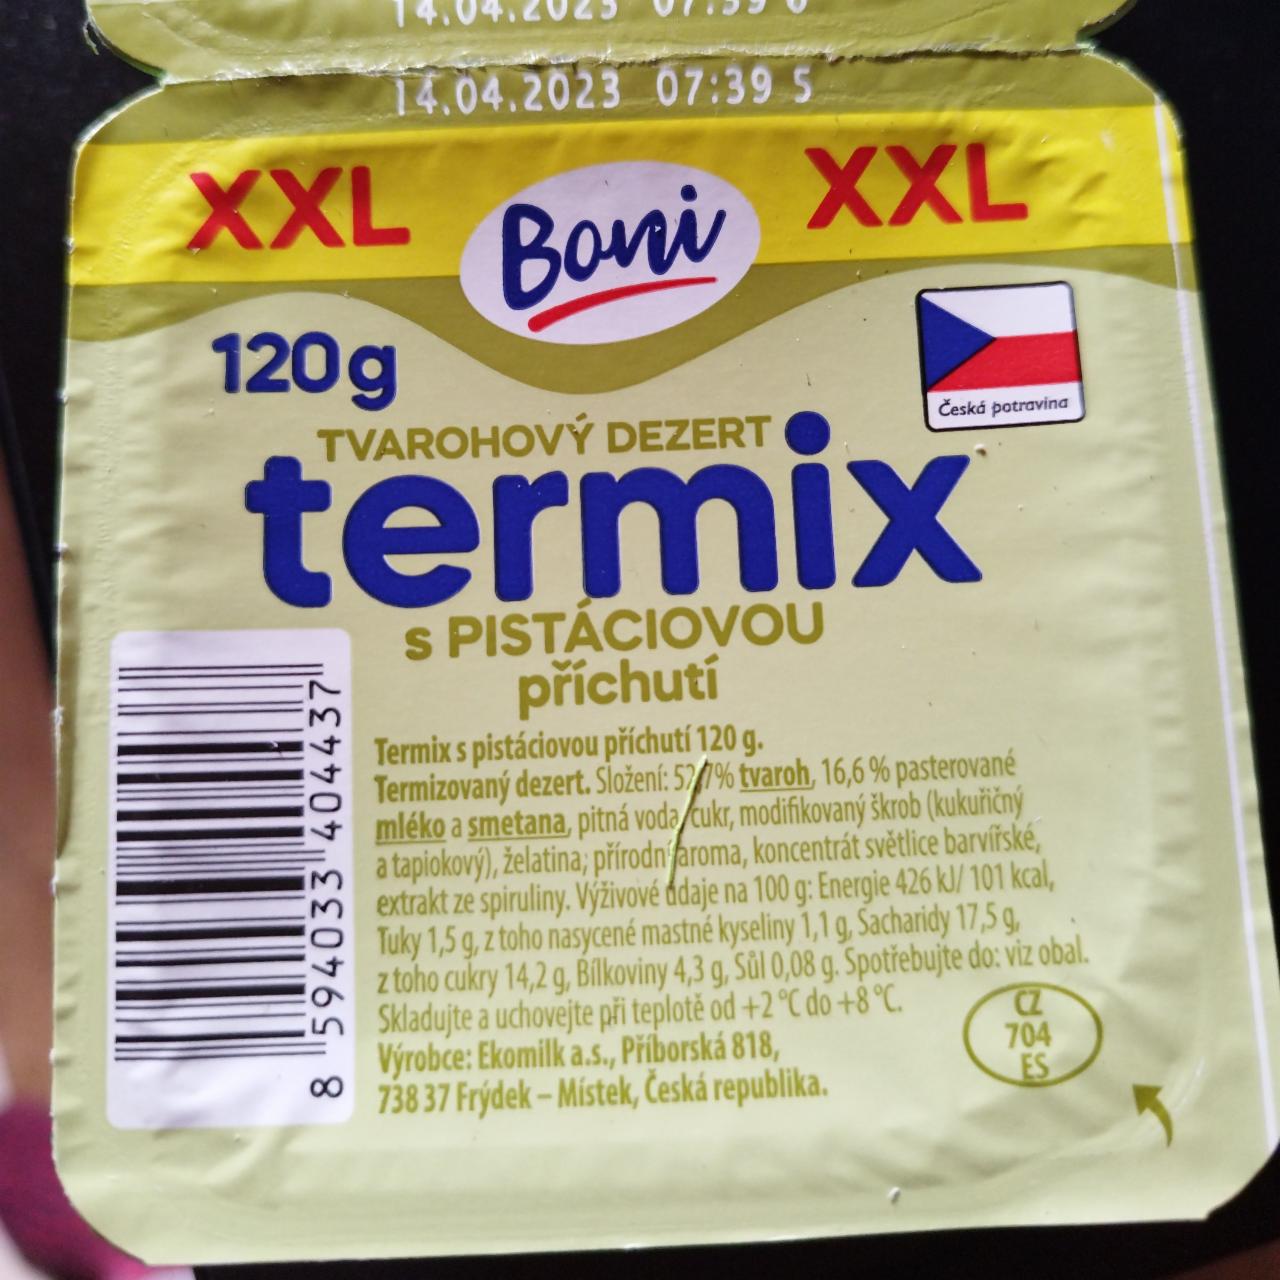 Fotografie - Tvarohový dezert termix s pistáciovou příchutí XXL Boni